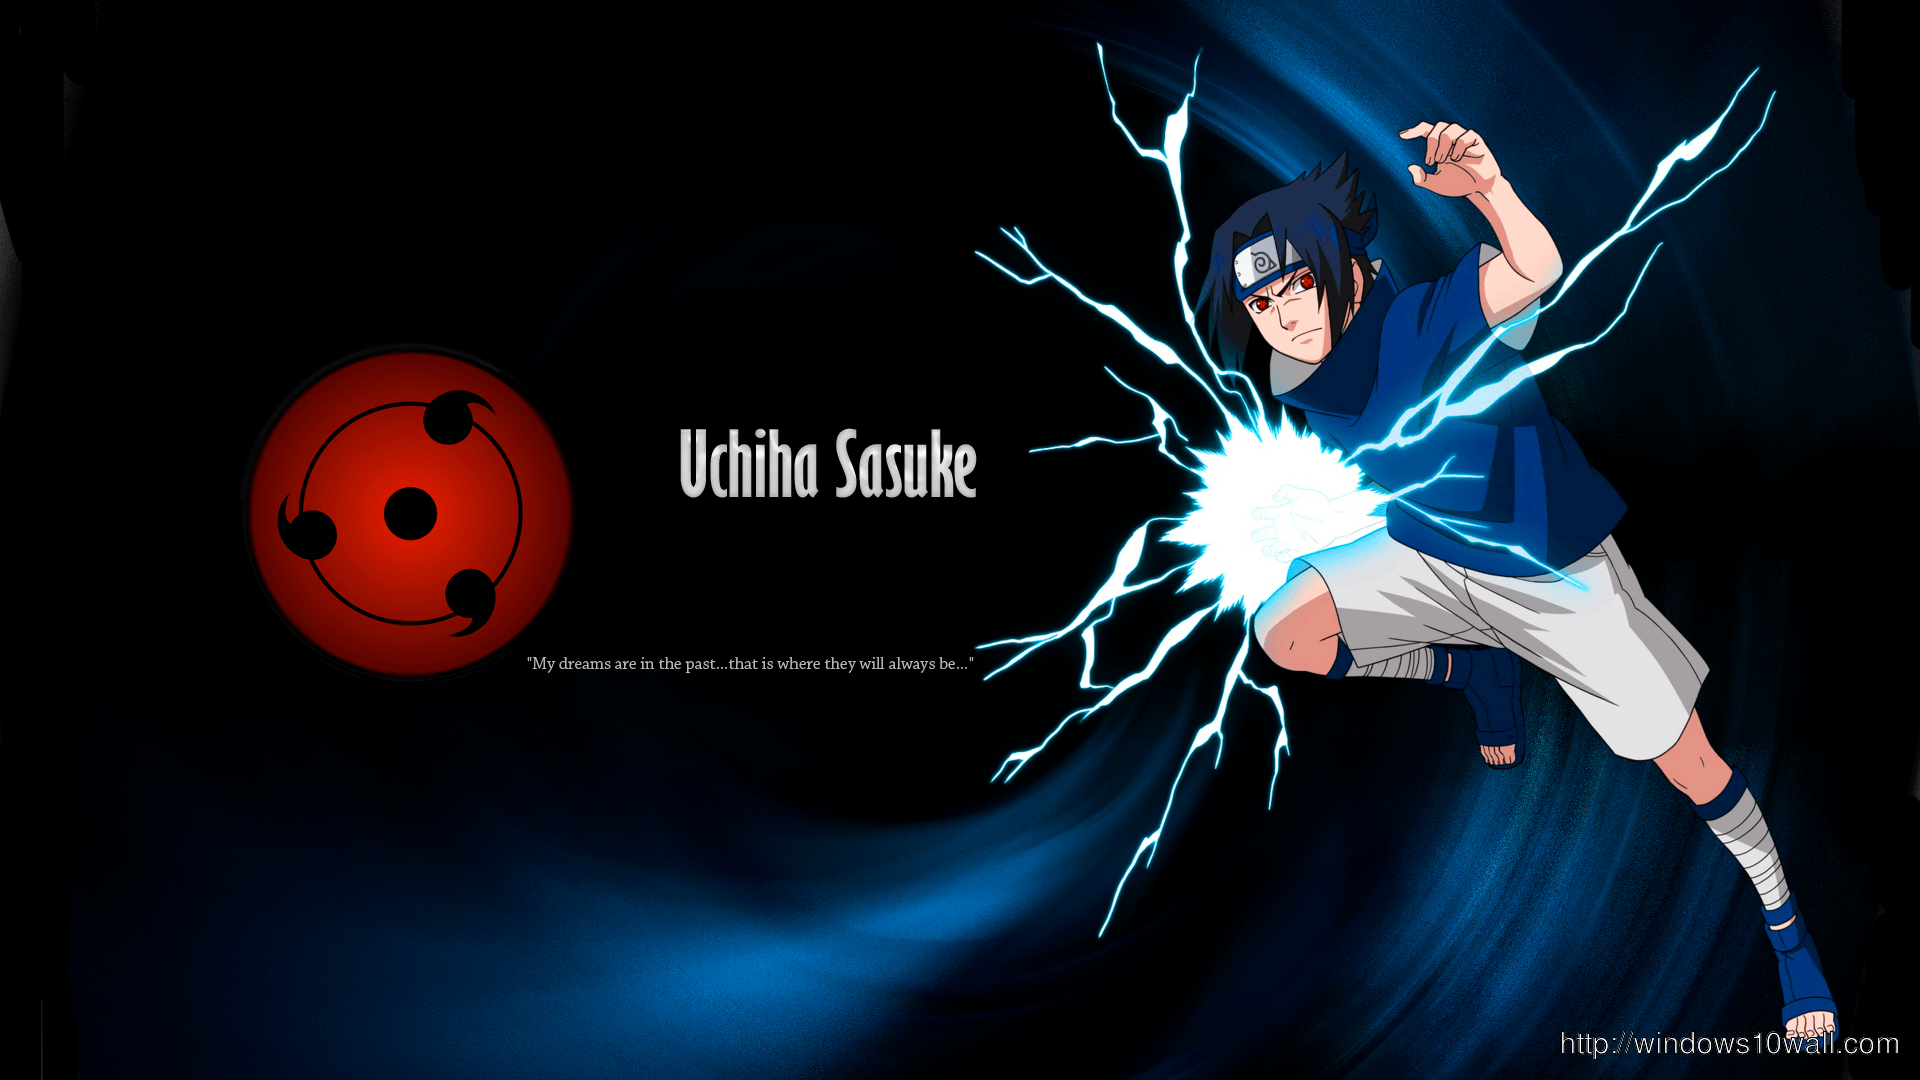 Naruto Shippuden Sasuke Uchiha Wallpaper 10 Wallpaper